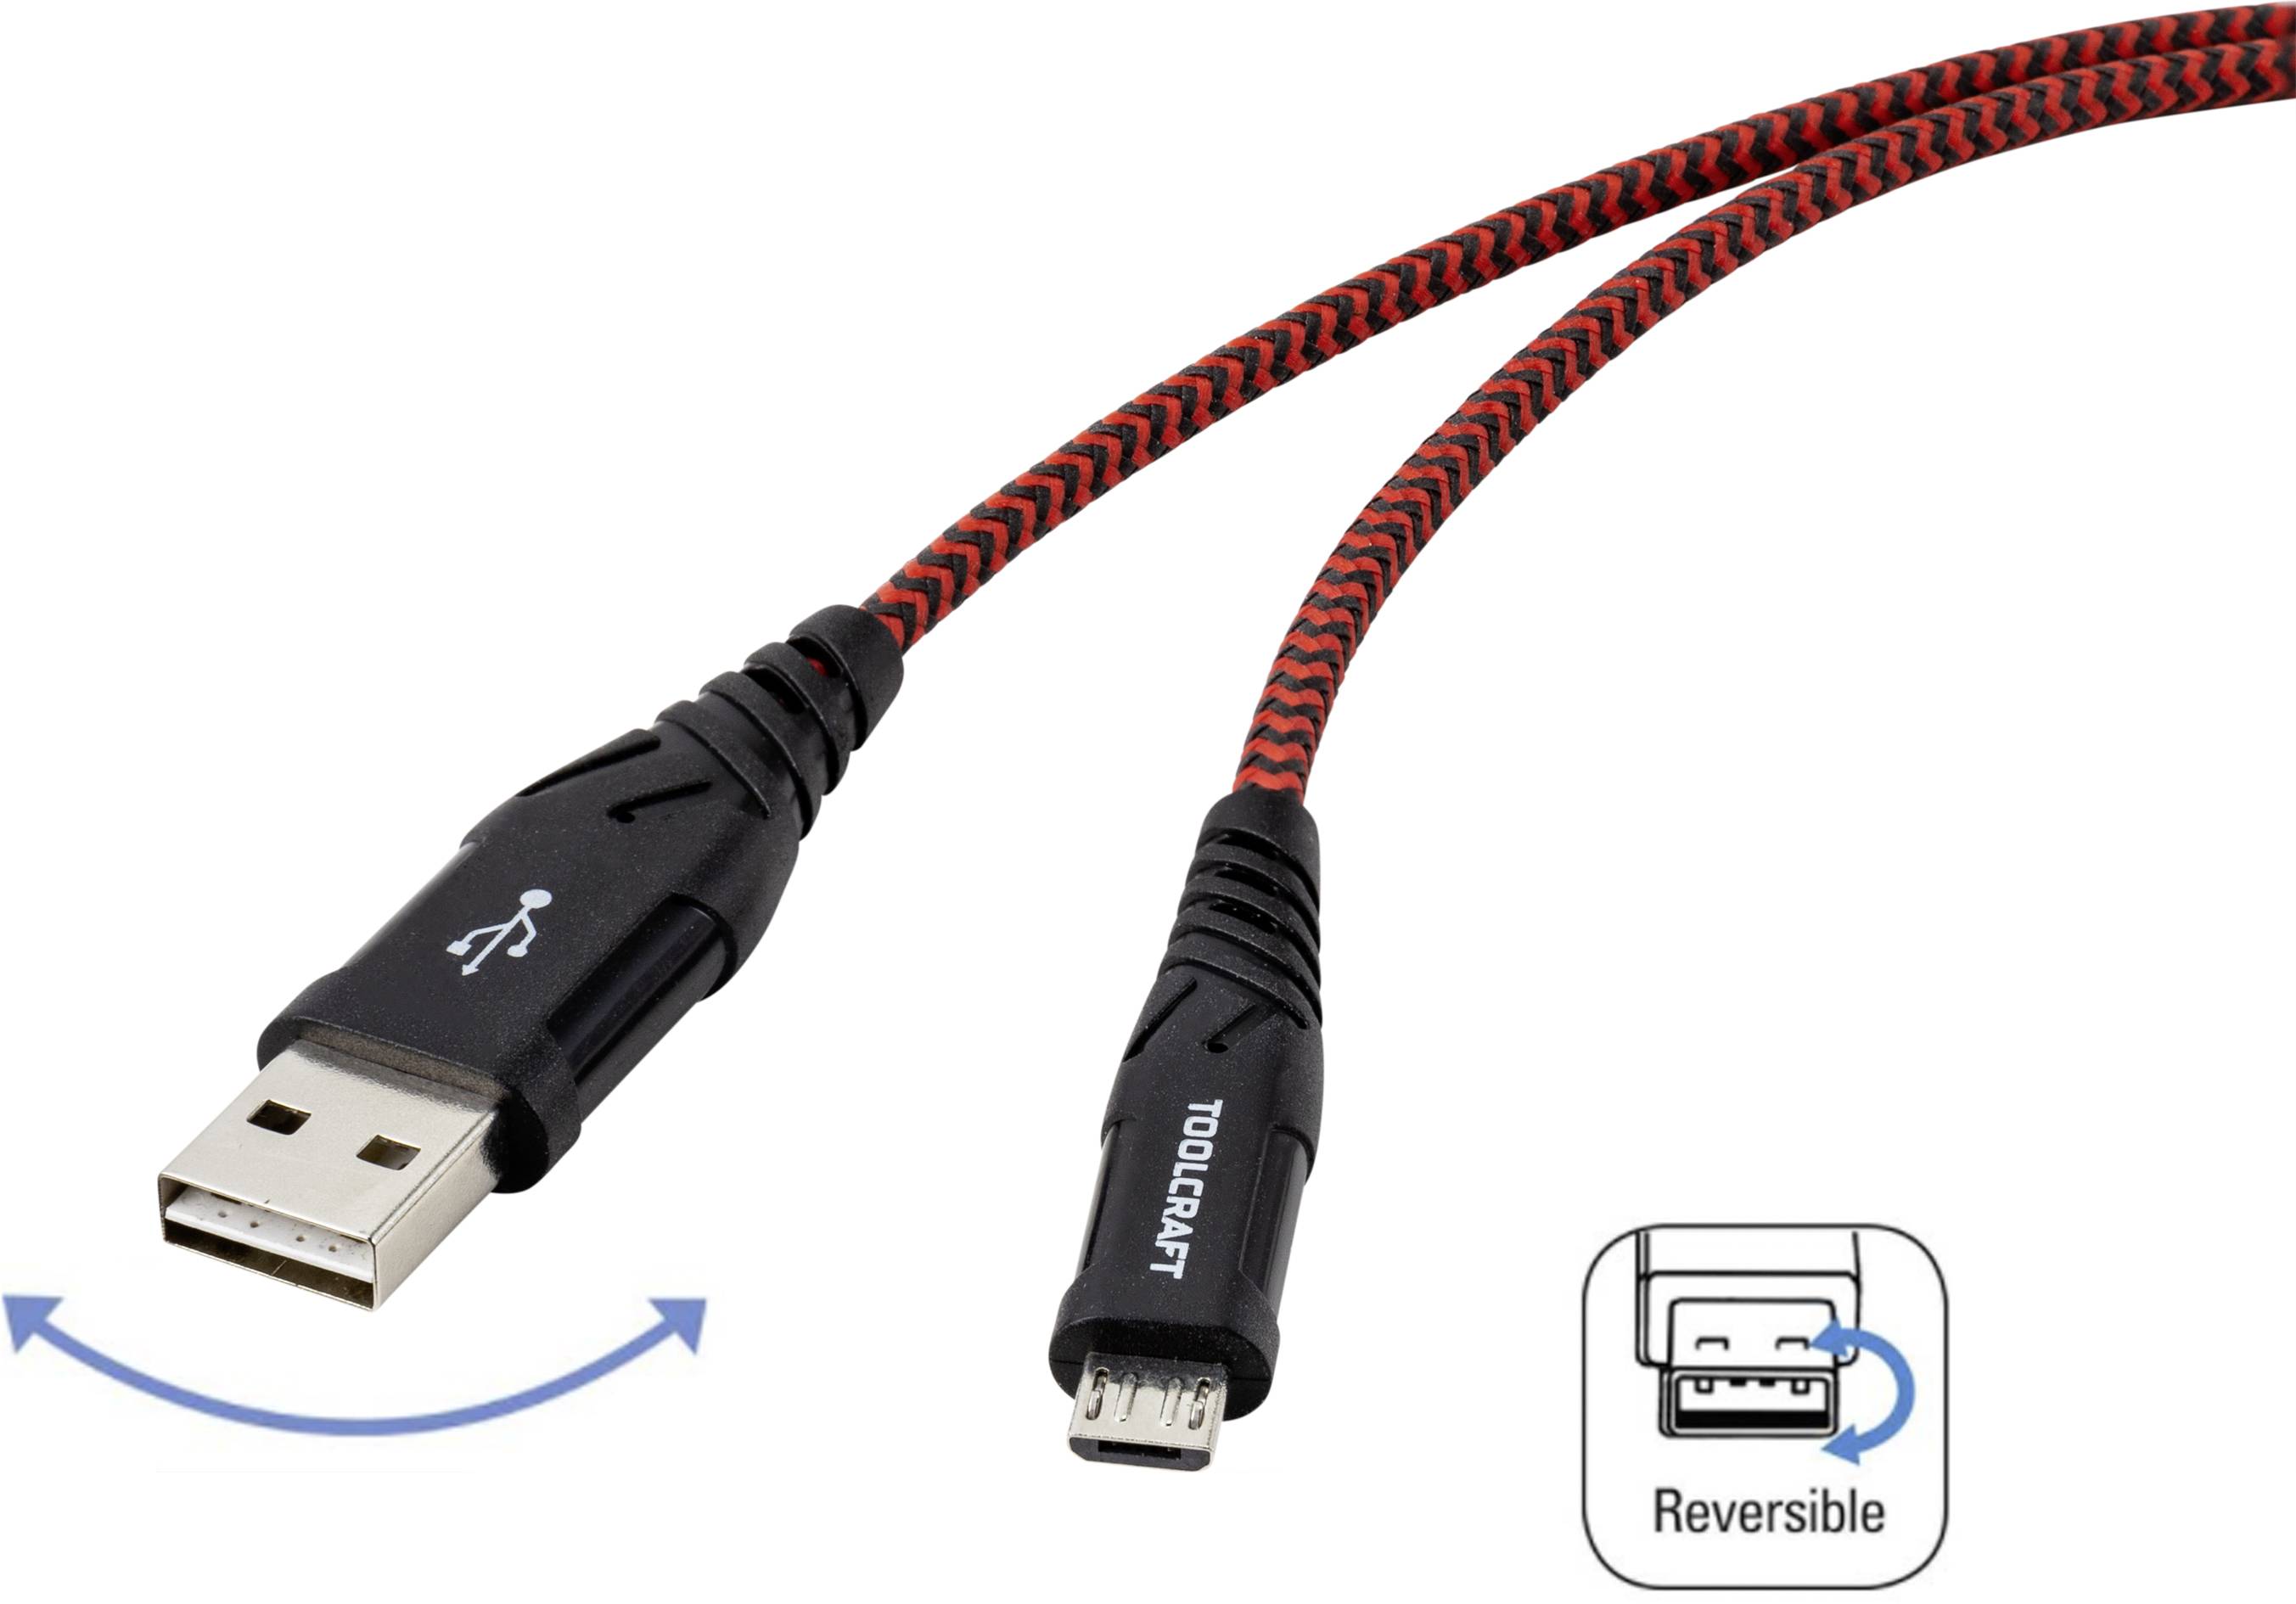 TOOLCRAFT USB 2.0 Anschlusskabel [1x USB 2.0 Stecker A - 1x USB 2.0 Stecker Micro-B] 1.00 m Sch